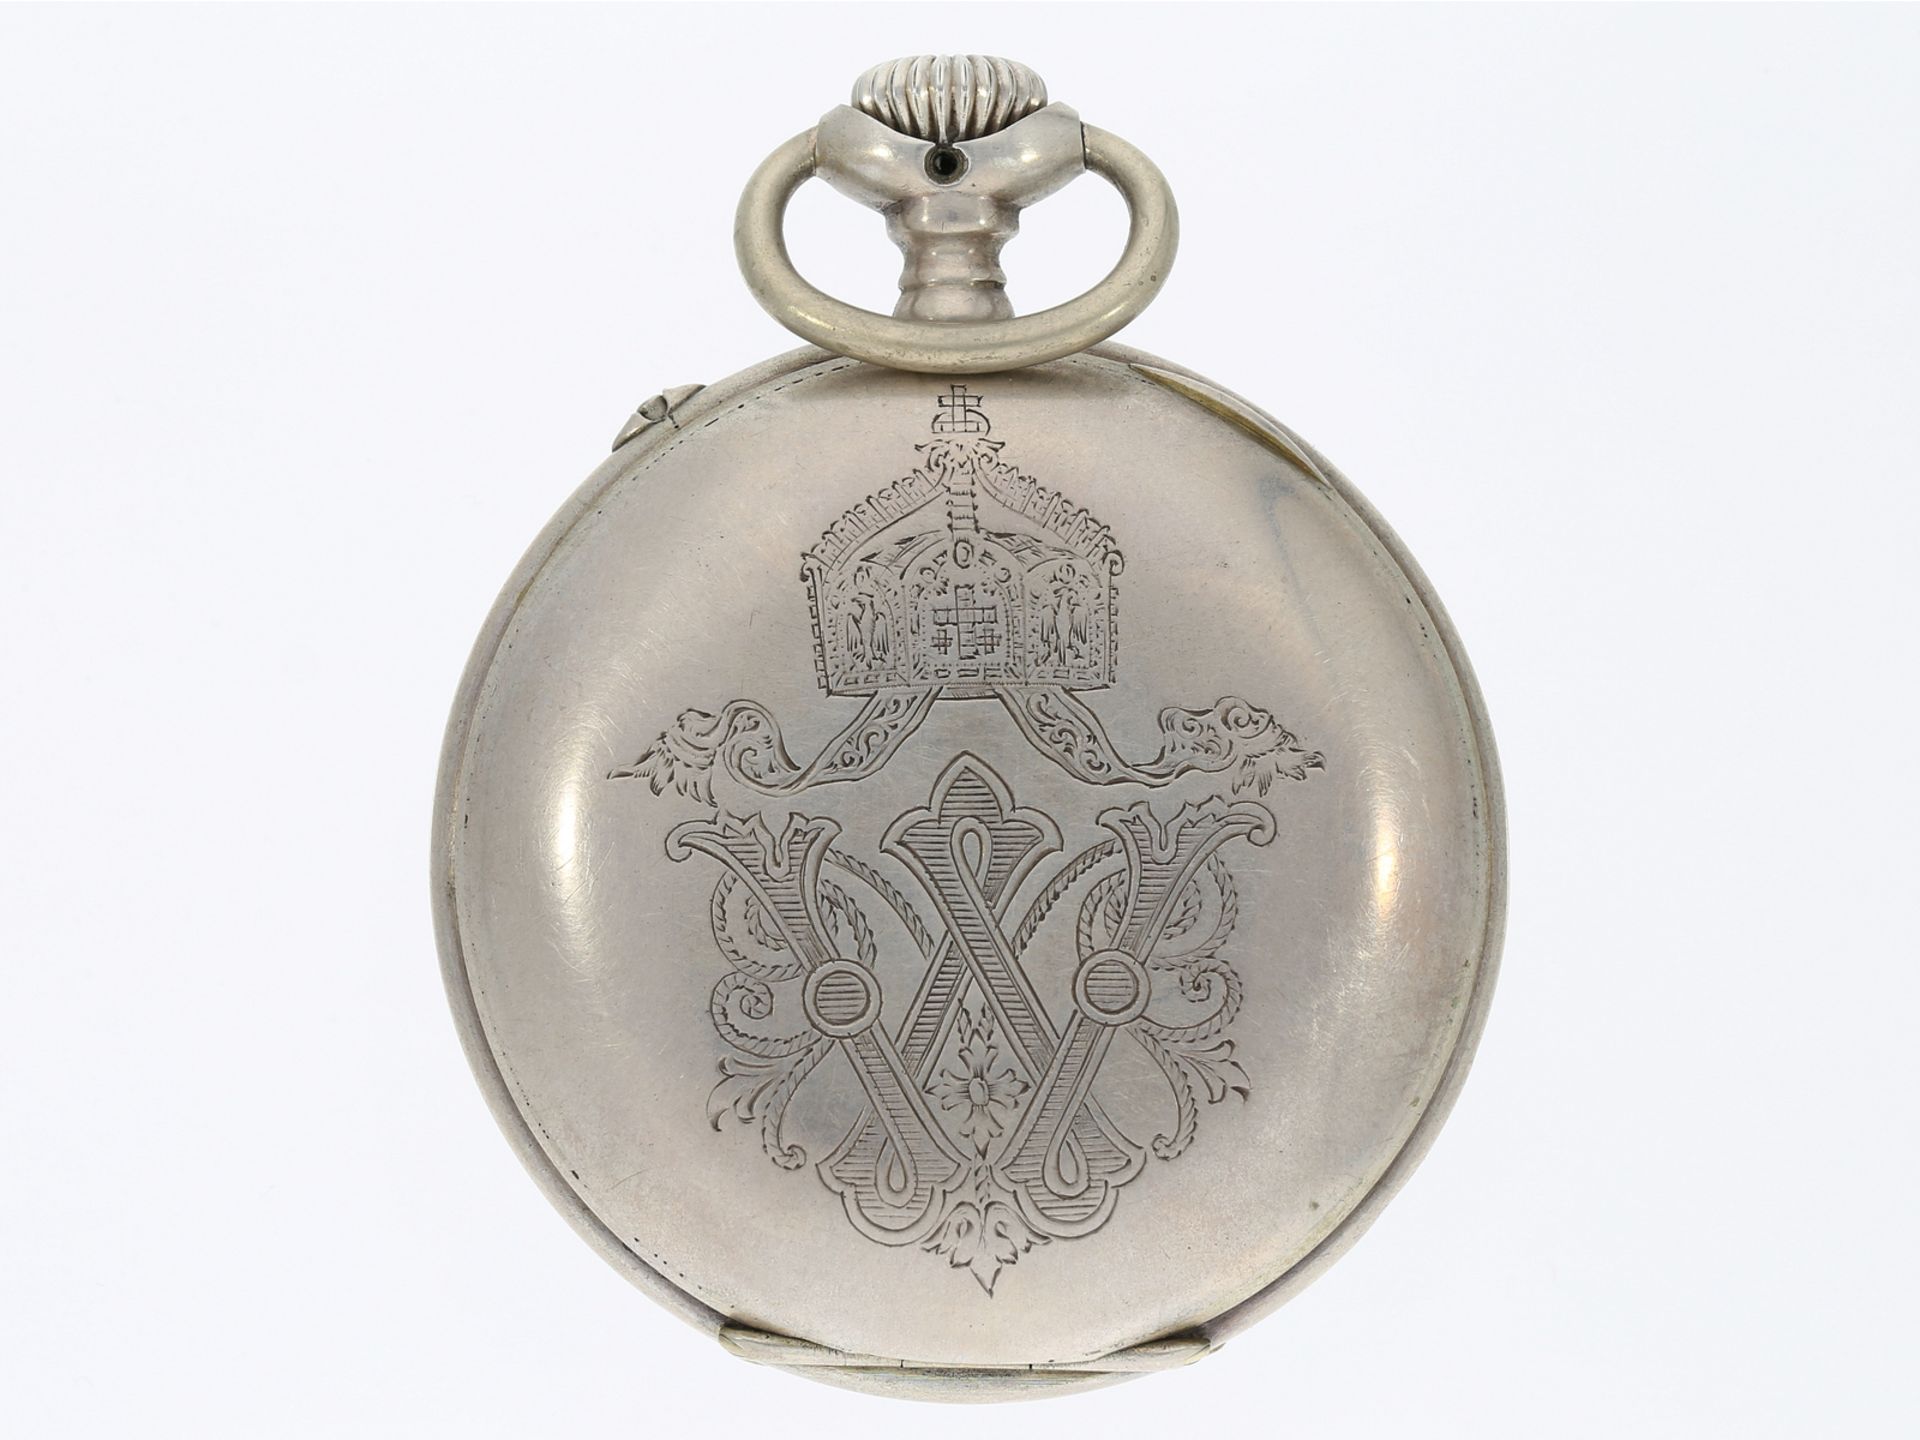 Taschenuhr: kaiserliche Präsent-Uhr mit originaler Schatulle, Gebrüder Eppner Berlin 1890 - Bild 2 aus 5